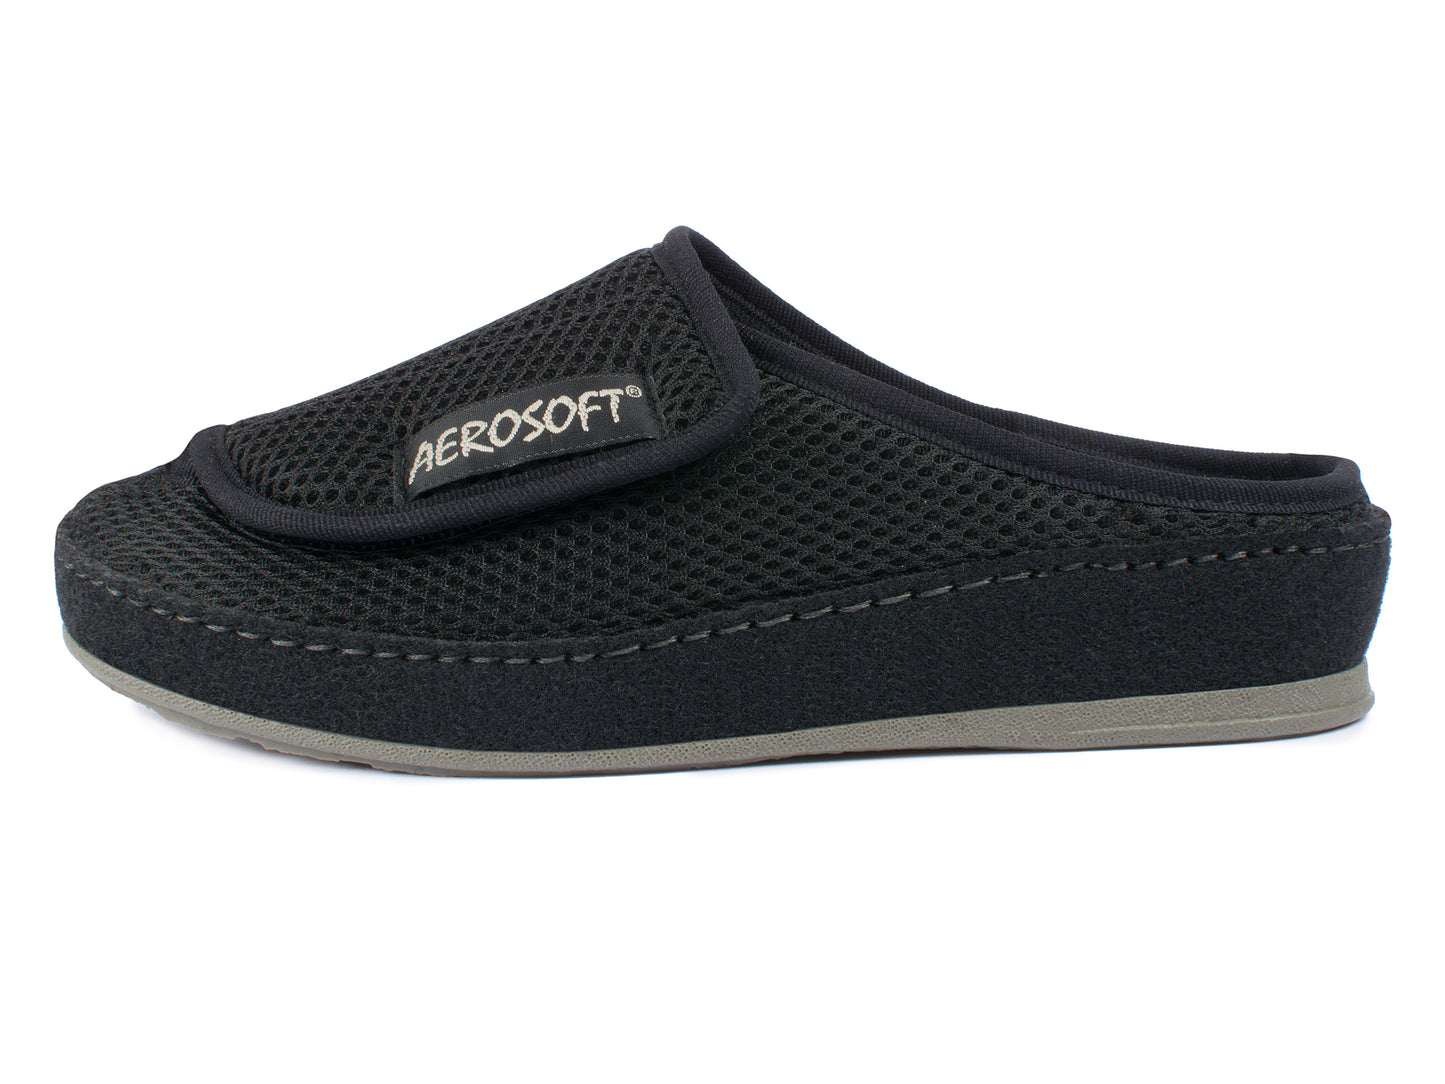 Aerosoft Klett-Pantolette 6032-4P, für Damen und Herren